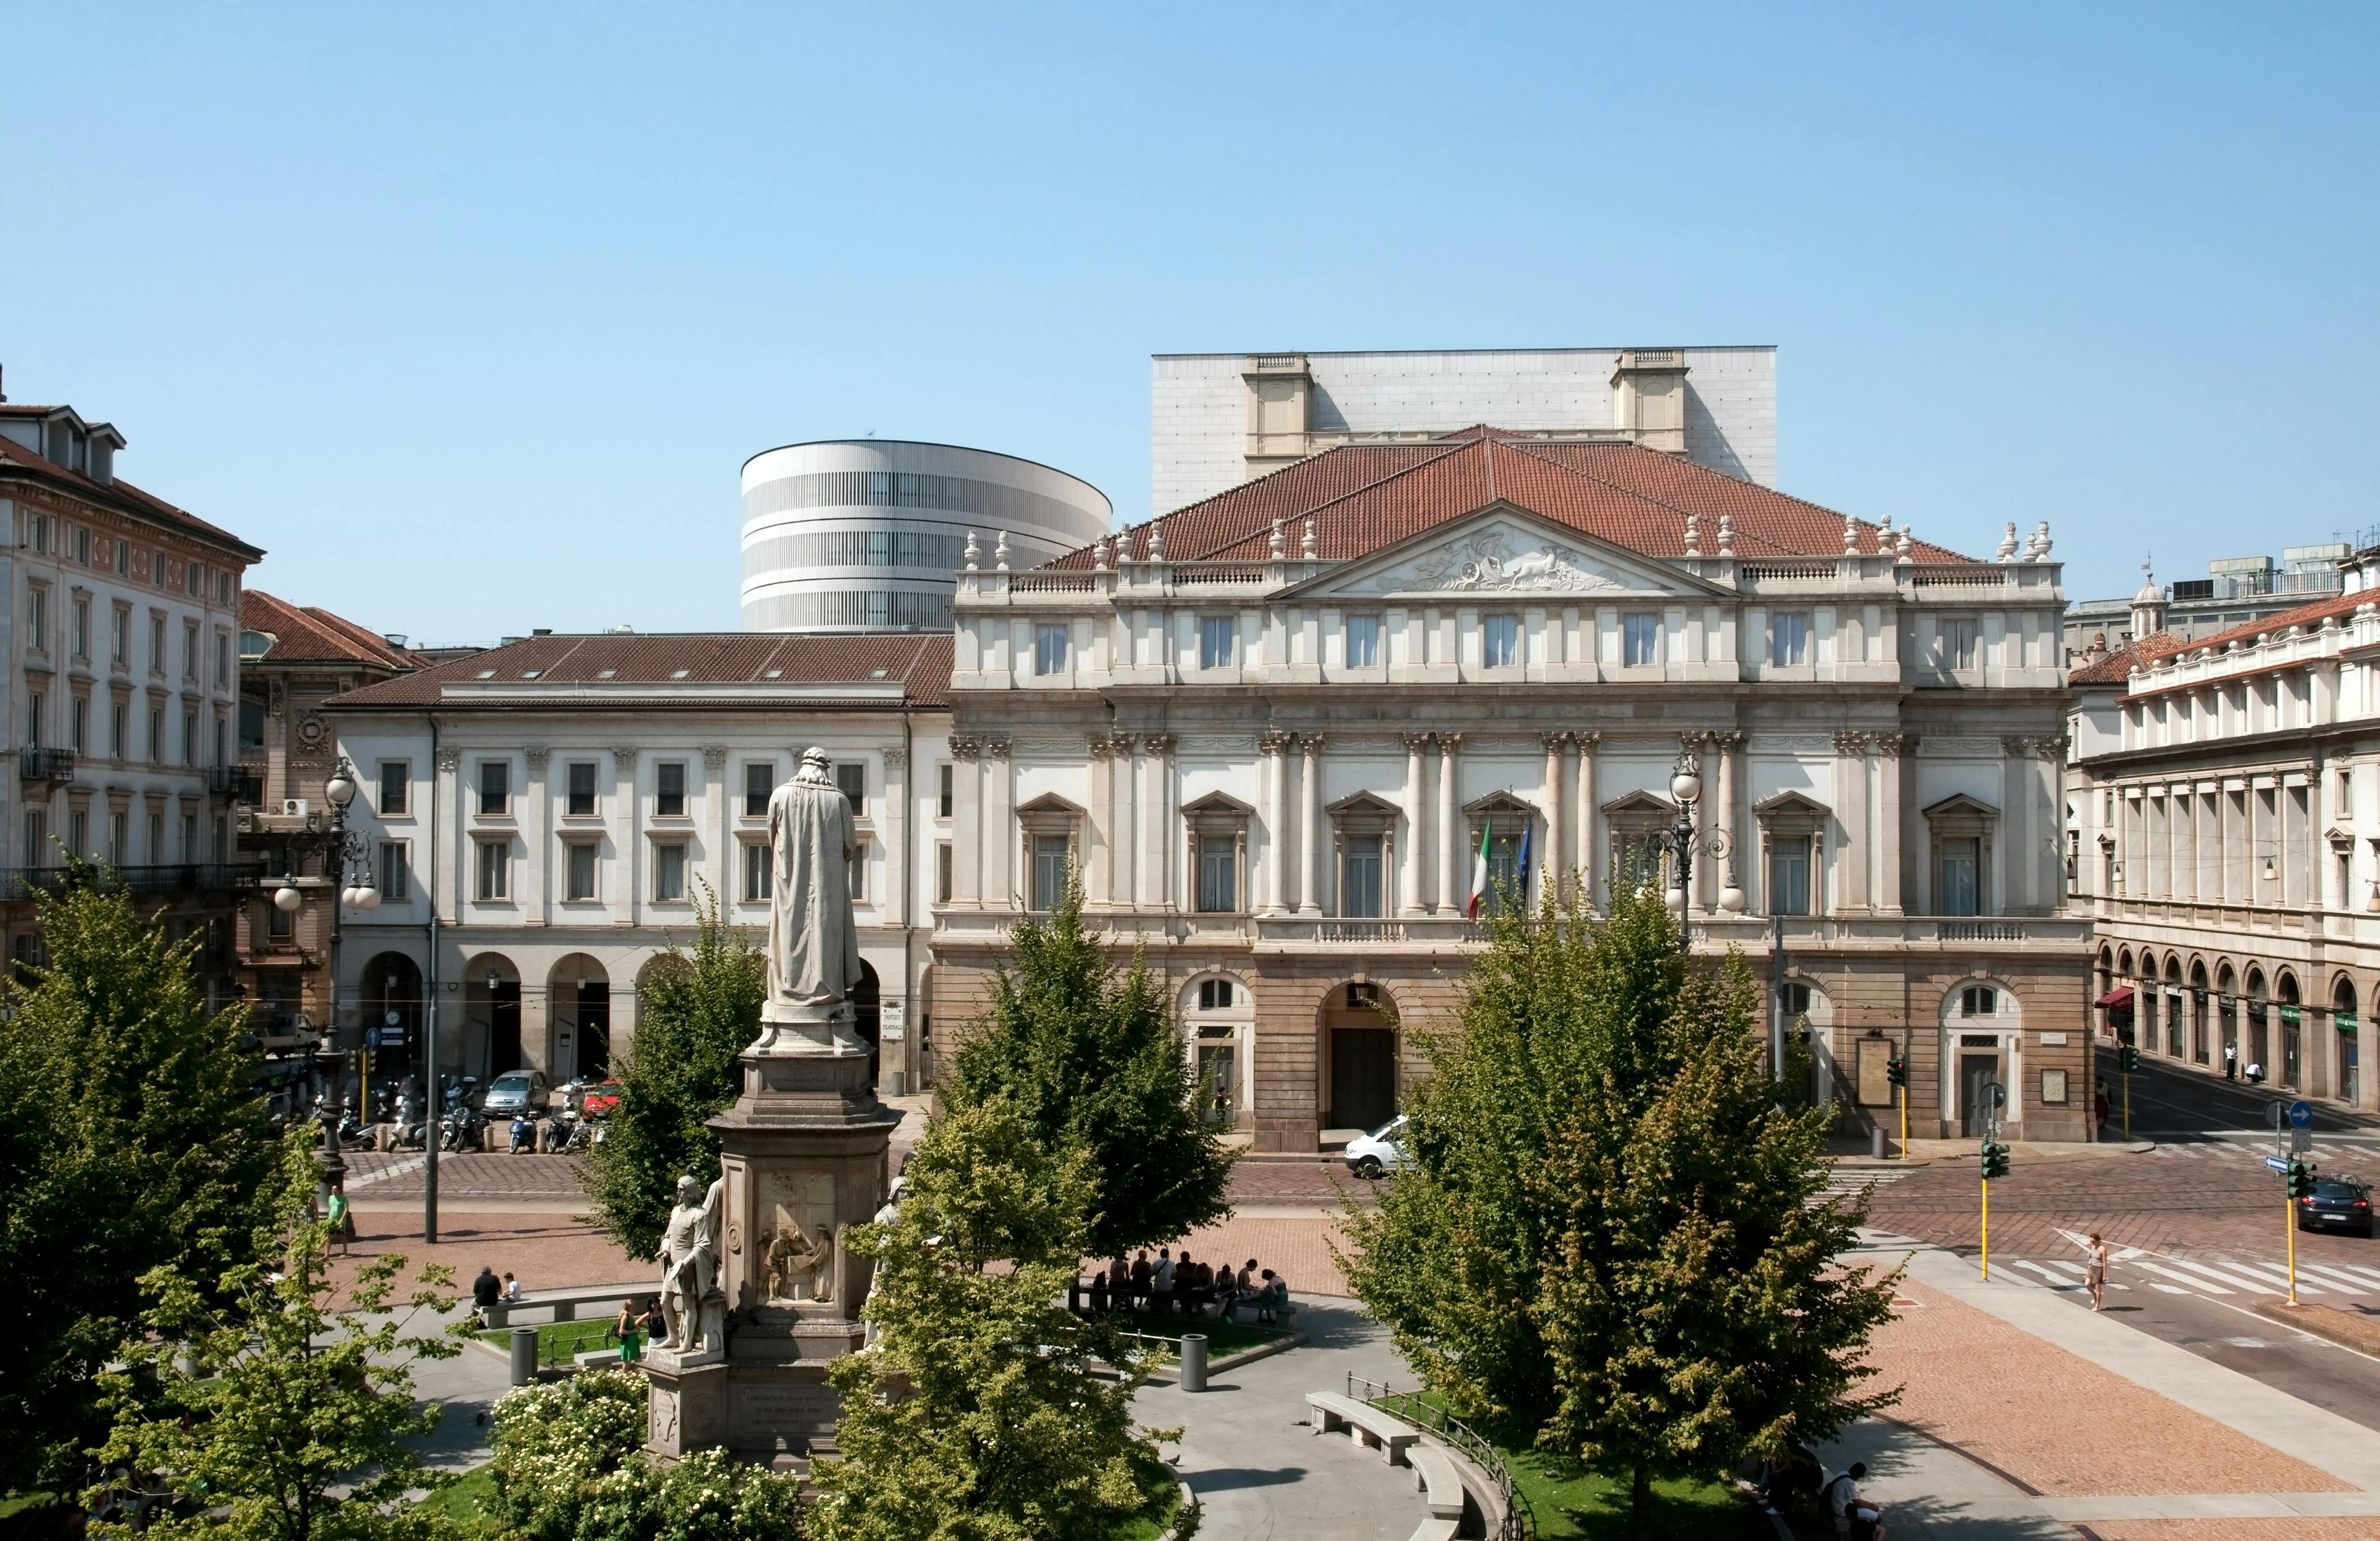 Exclusiva visita guiada por Milán con La Scala, Plaza del Duomo y Galería Vittorio Emanuele II